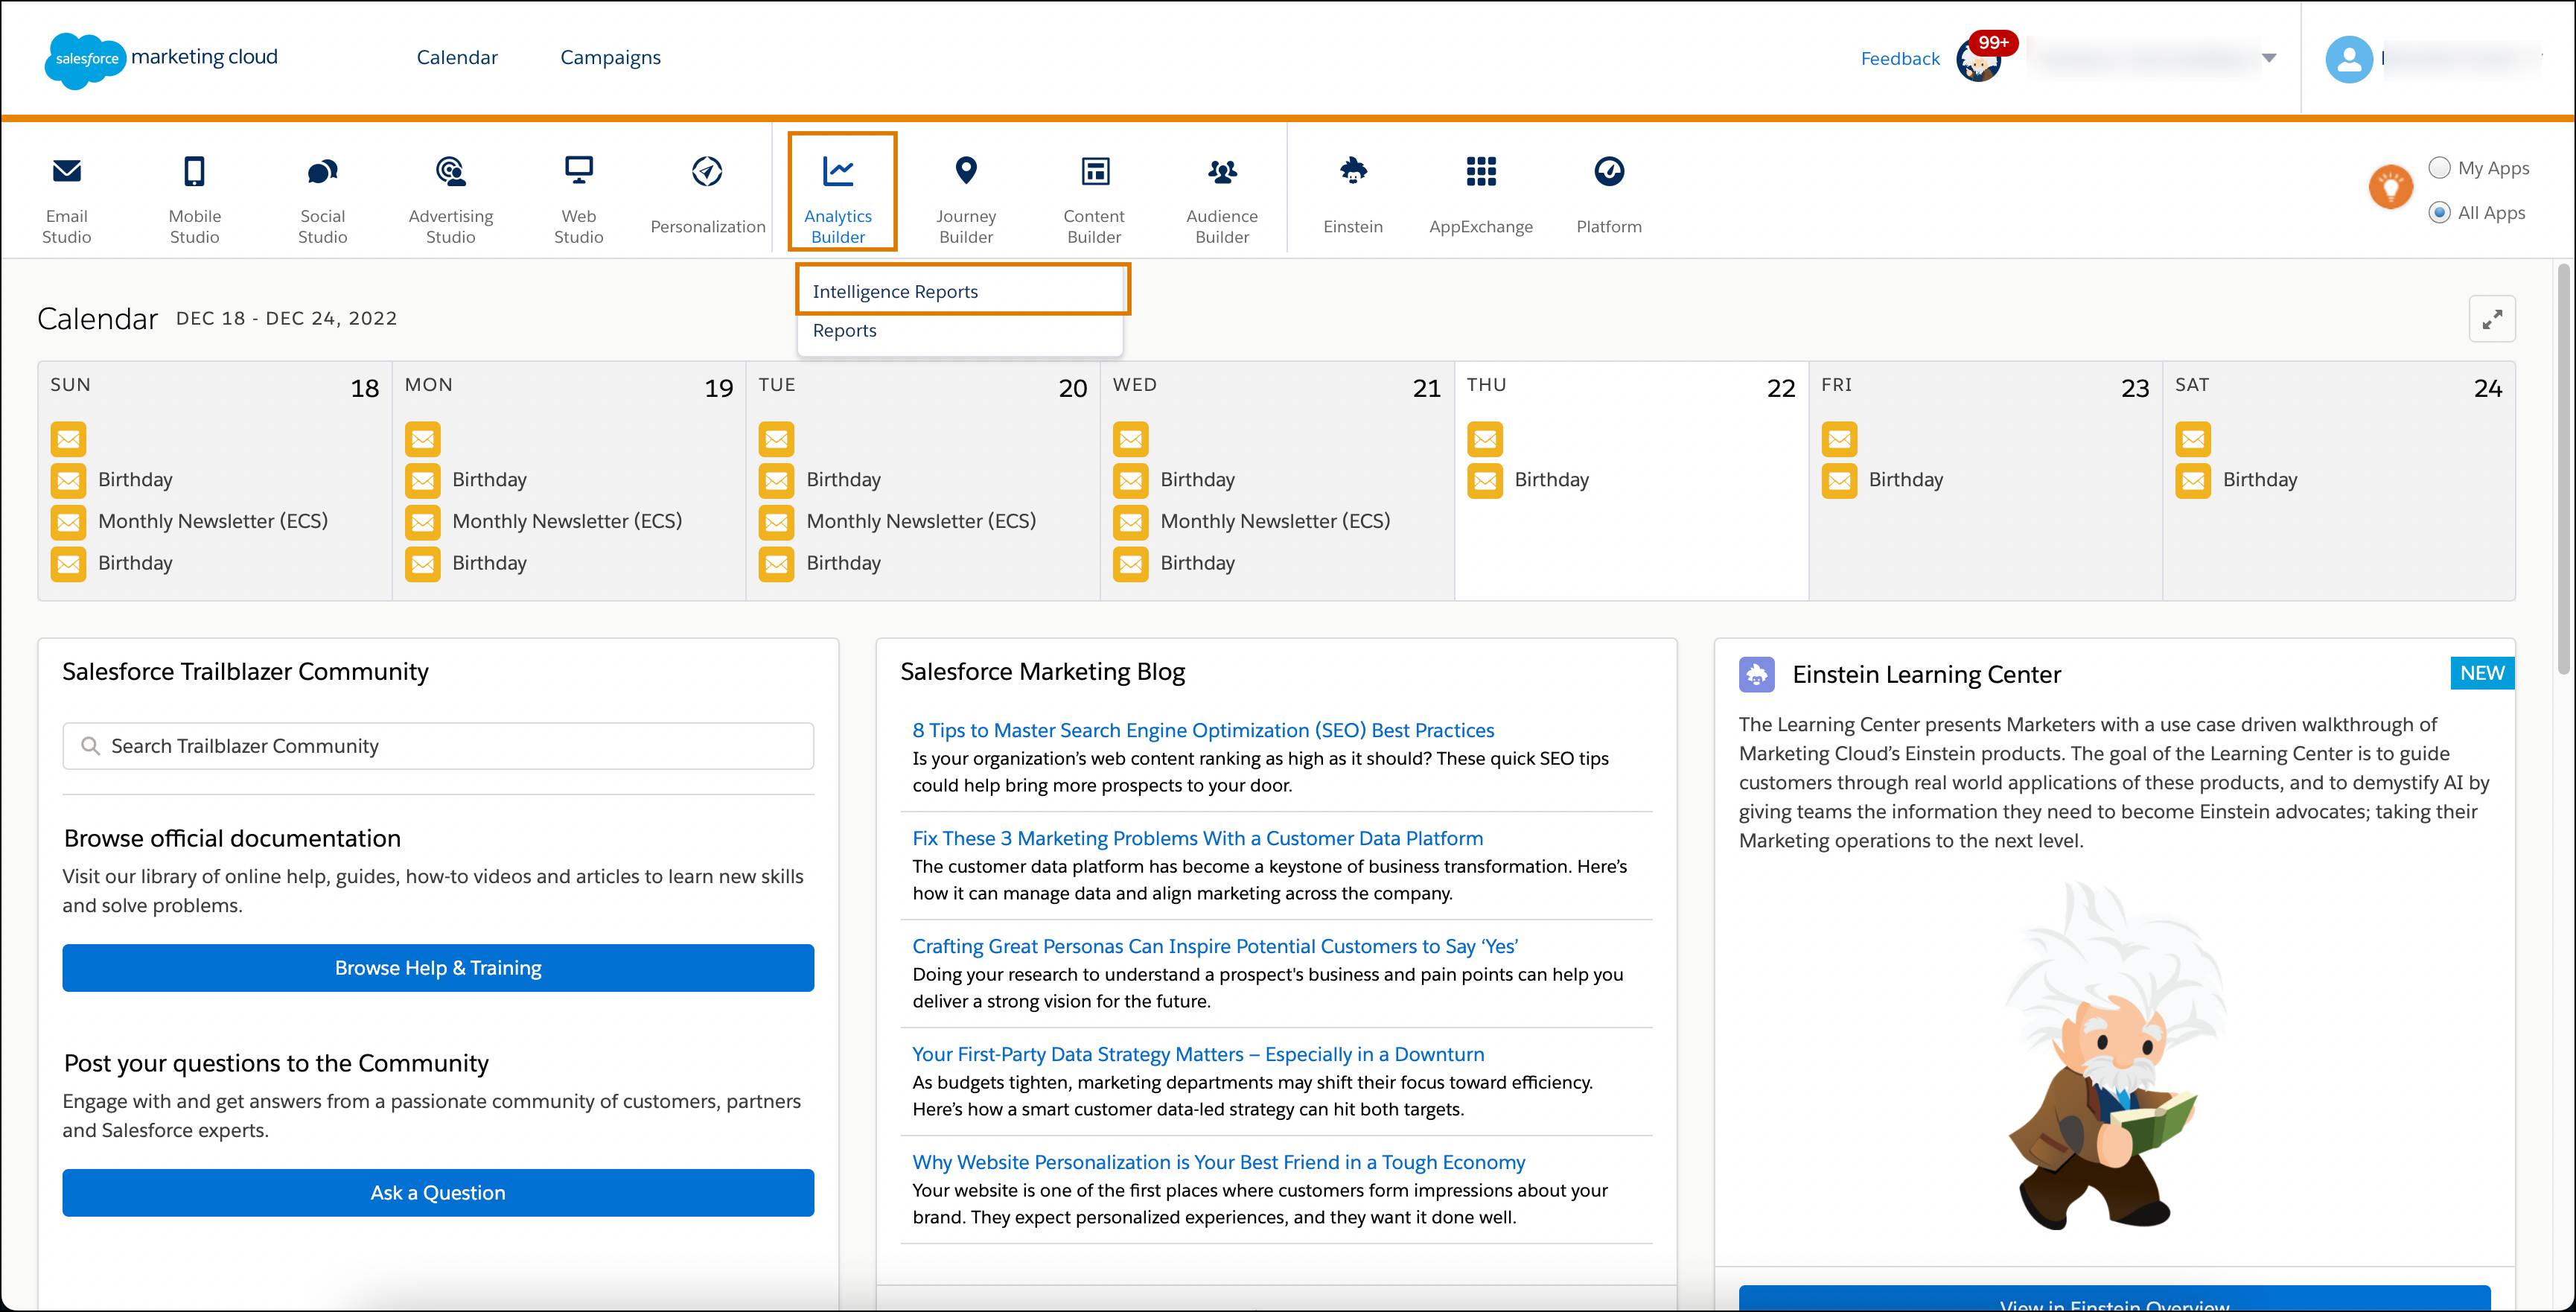 Página inicial do Marketing Cloud com menu do Analytics Builder expandido para mostrar o Datorama Reports sendo selecionado